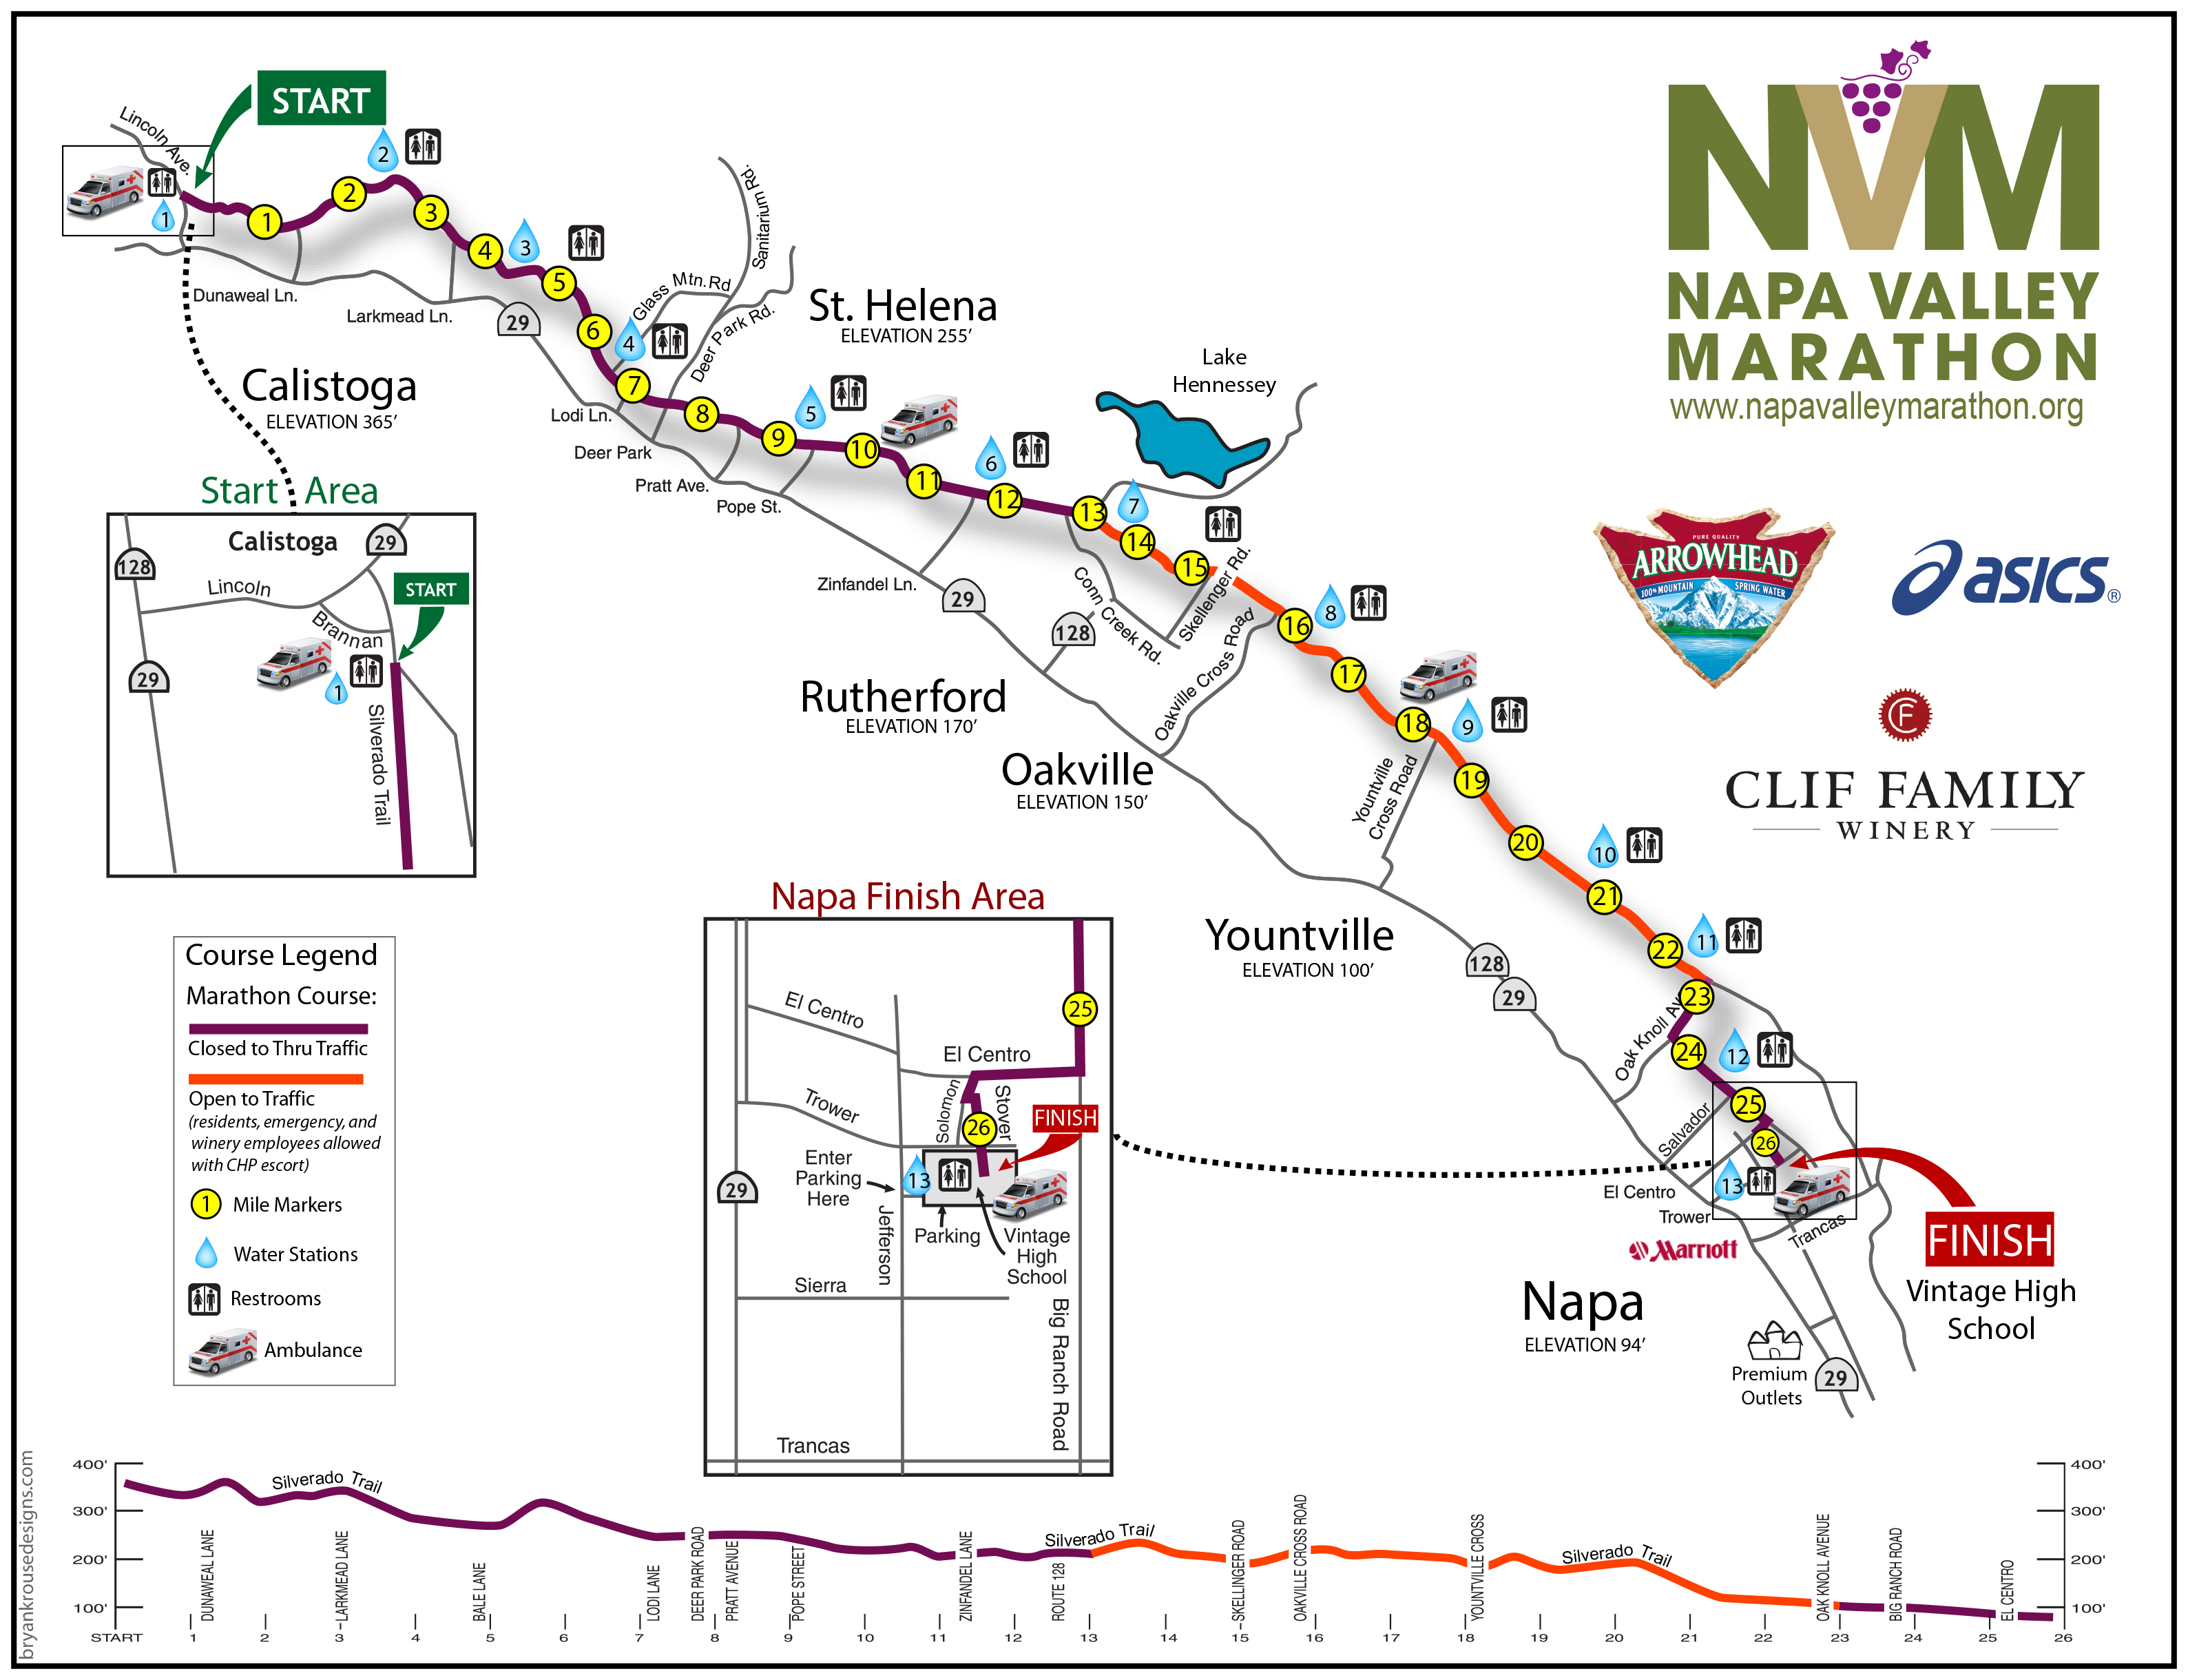 Napa Valley Marathon Visit Napa Valley